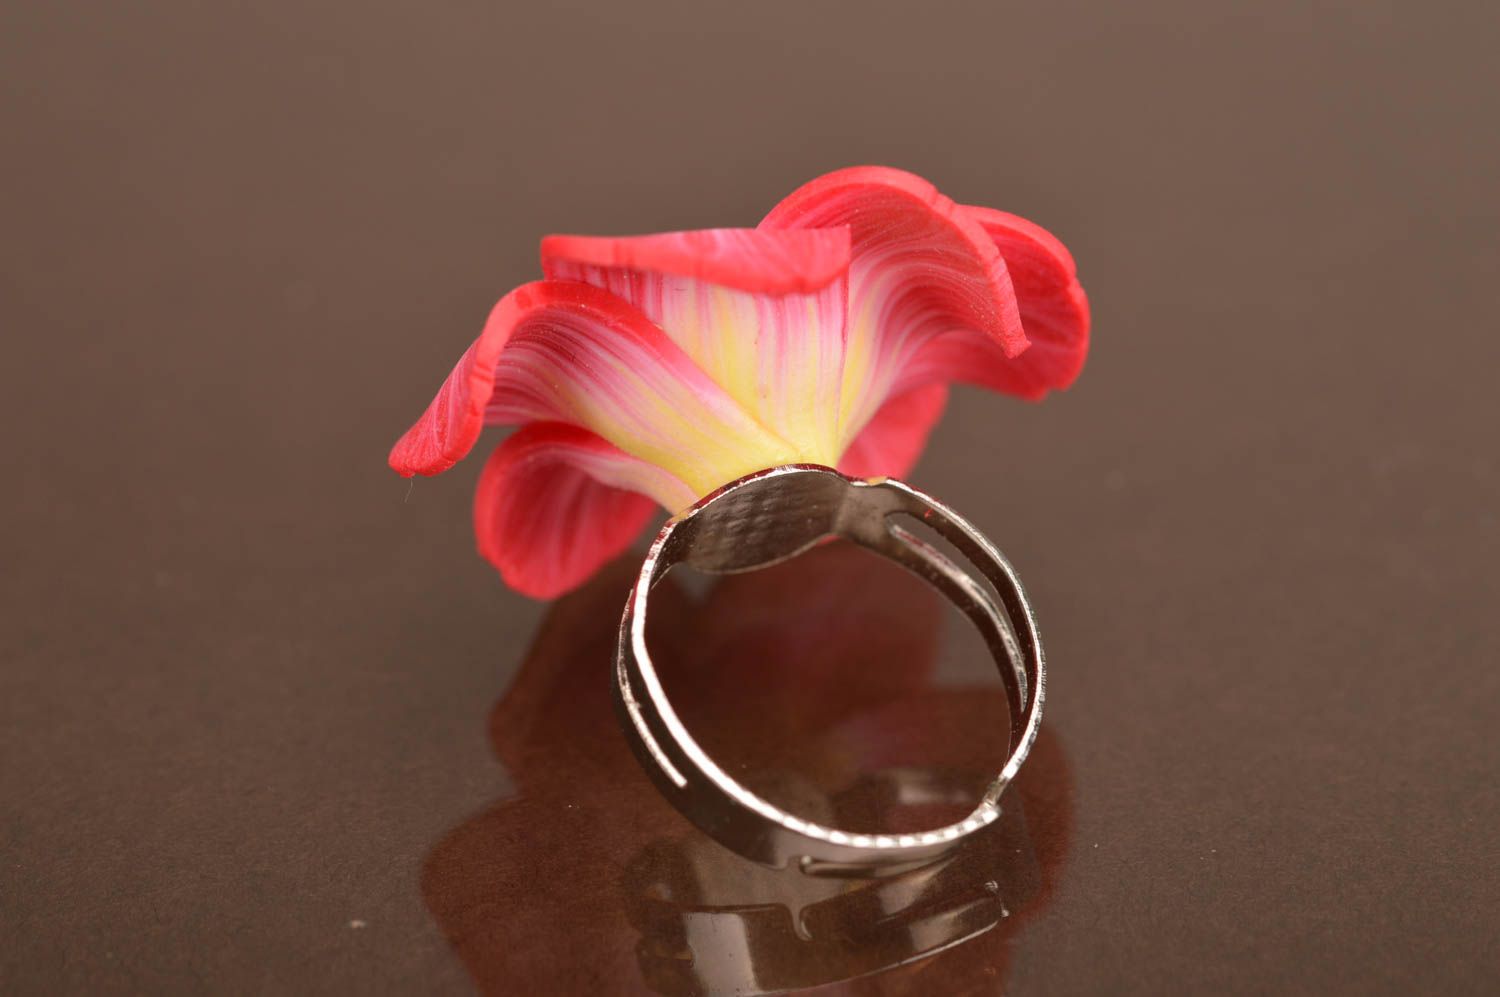 Цветочное кольцо из полимерной глины ручной работы розовое нарядное для девушки фото 4